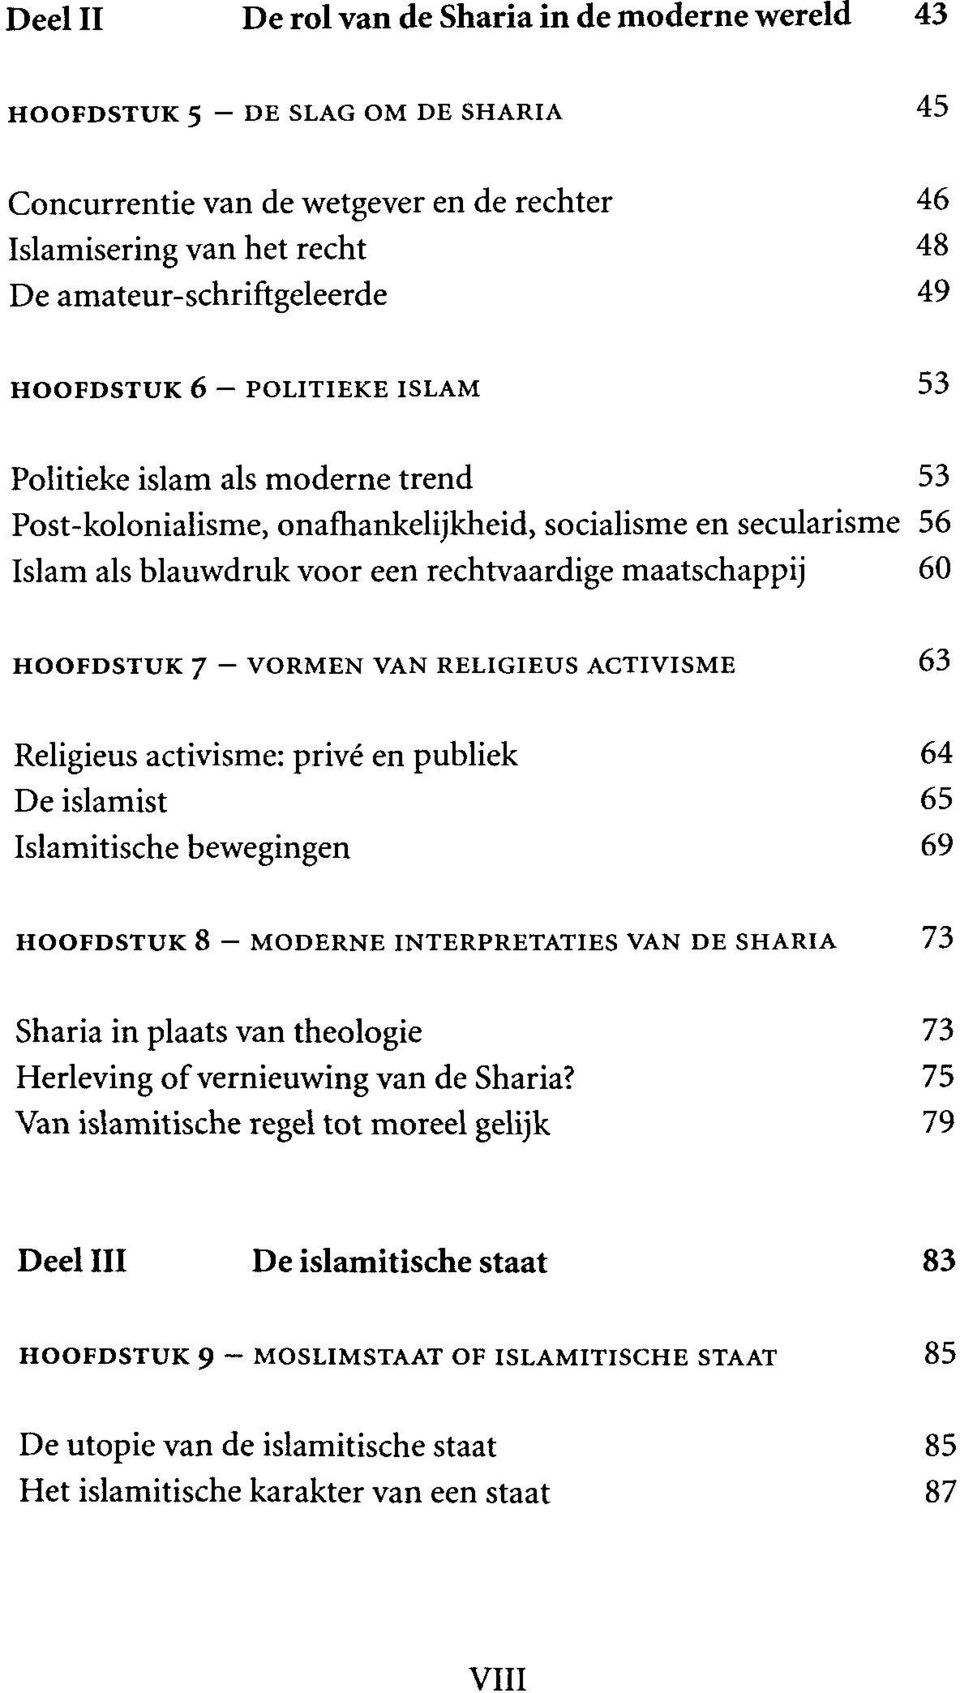 HOOFDSTUK 7 VORMEN VAN RELIGIEUS ACTIVISME 63 Religieus activisme: prive en publiek 64 De islamist 65 Islamitische bewegingen 69 HOOFDSTUK 8 - MODERNE INTERPRETATIES VAN DE SHARIA 73 Sharia in plaats